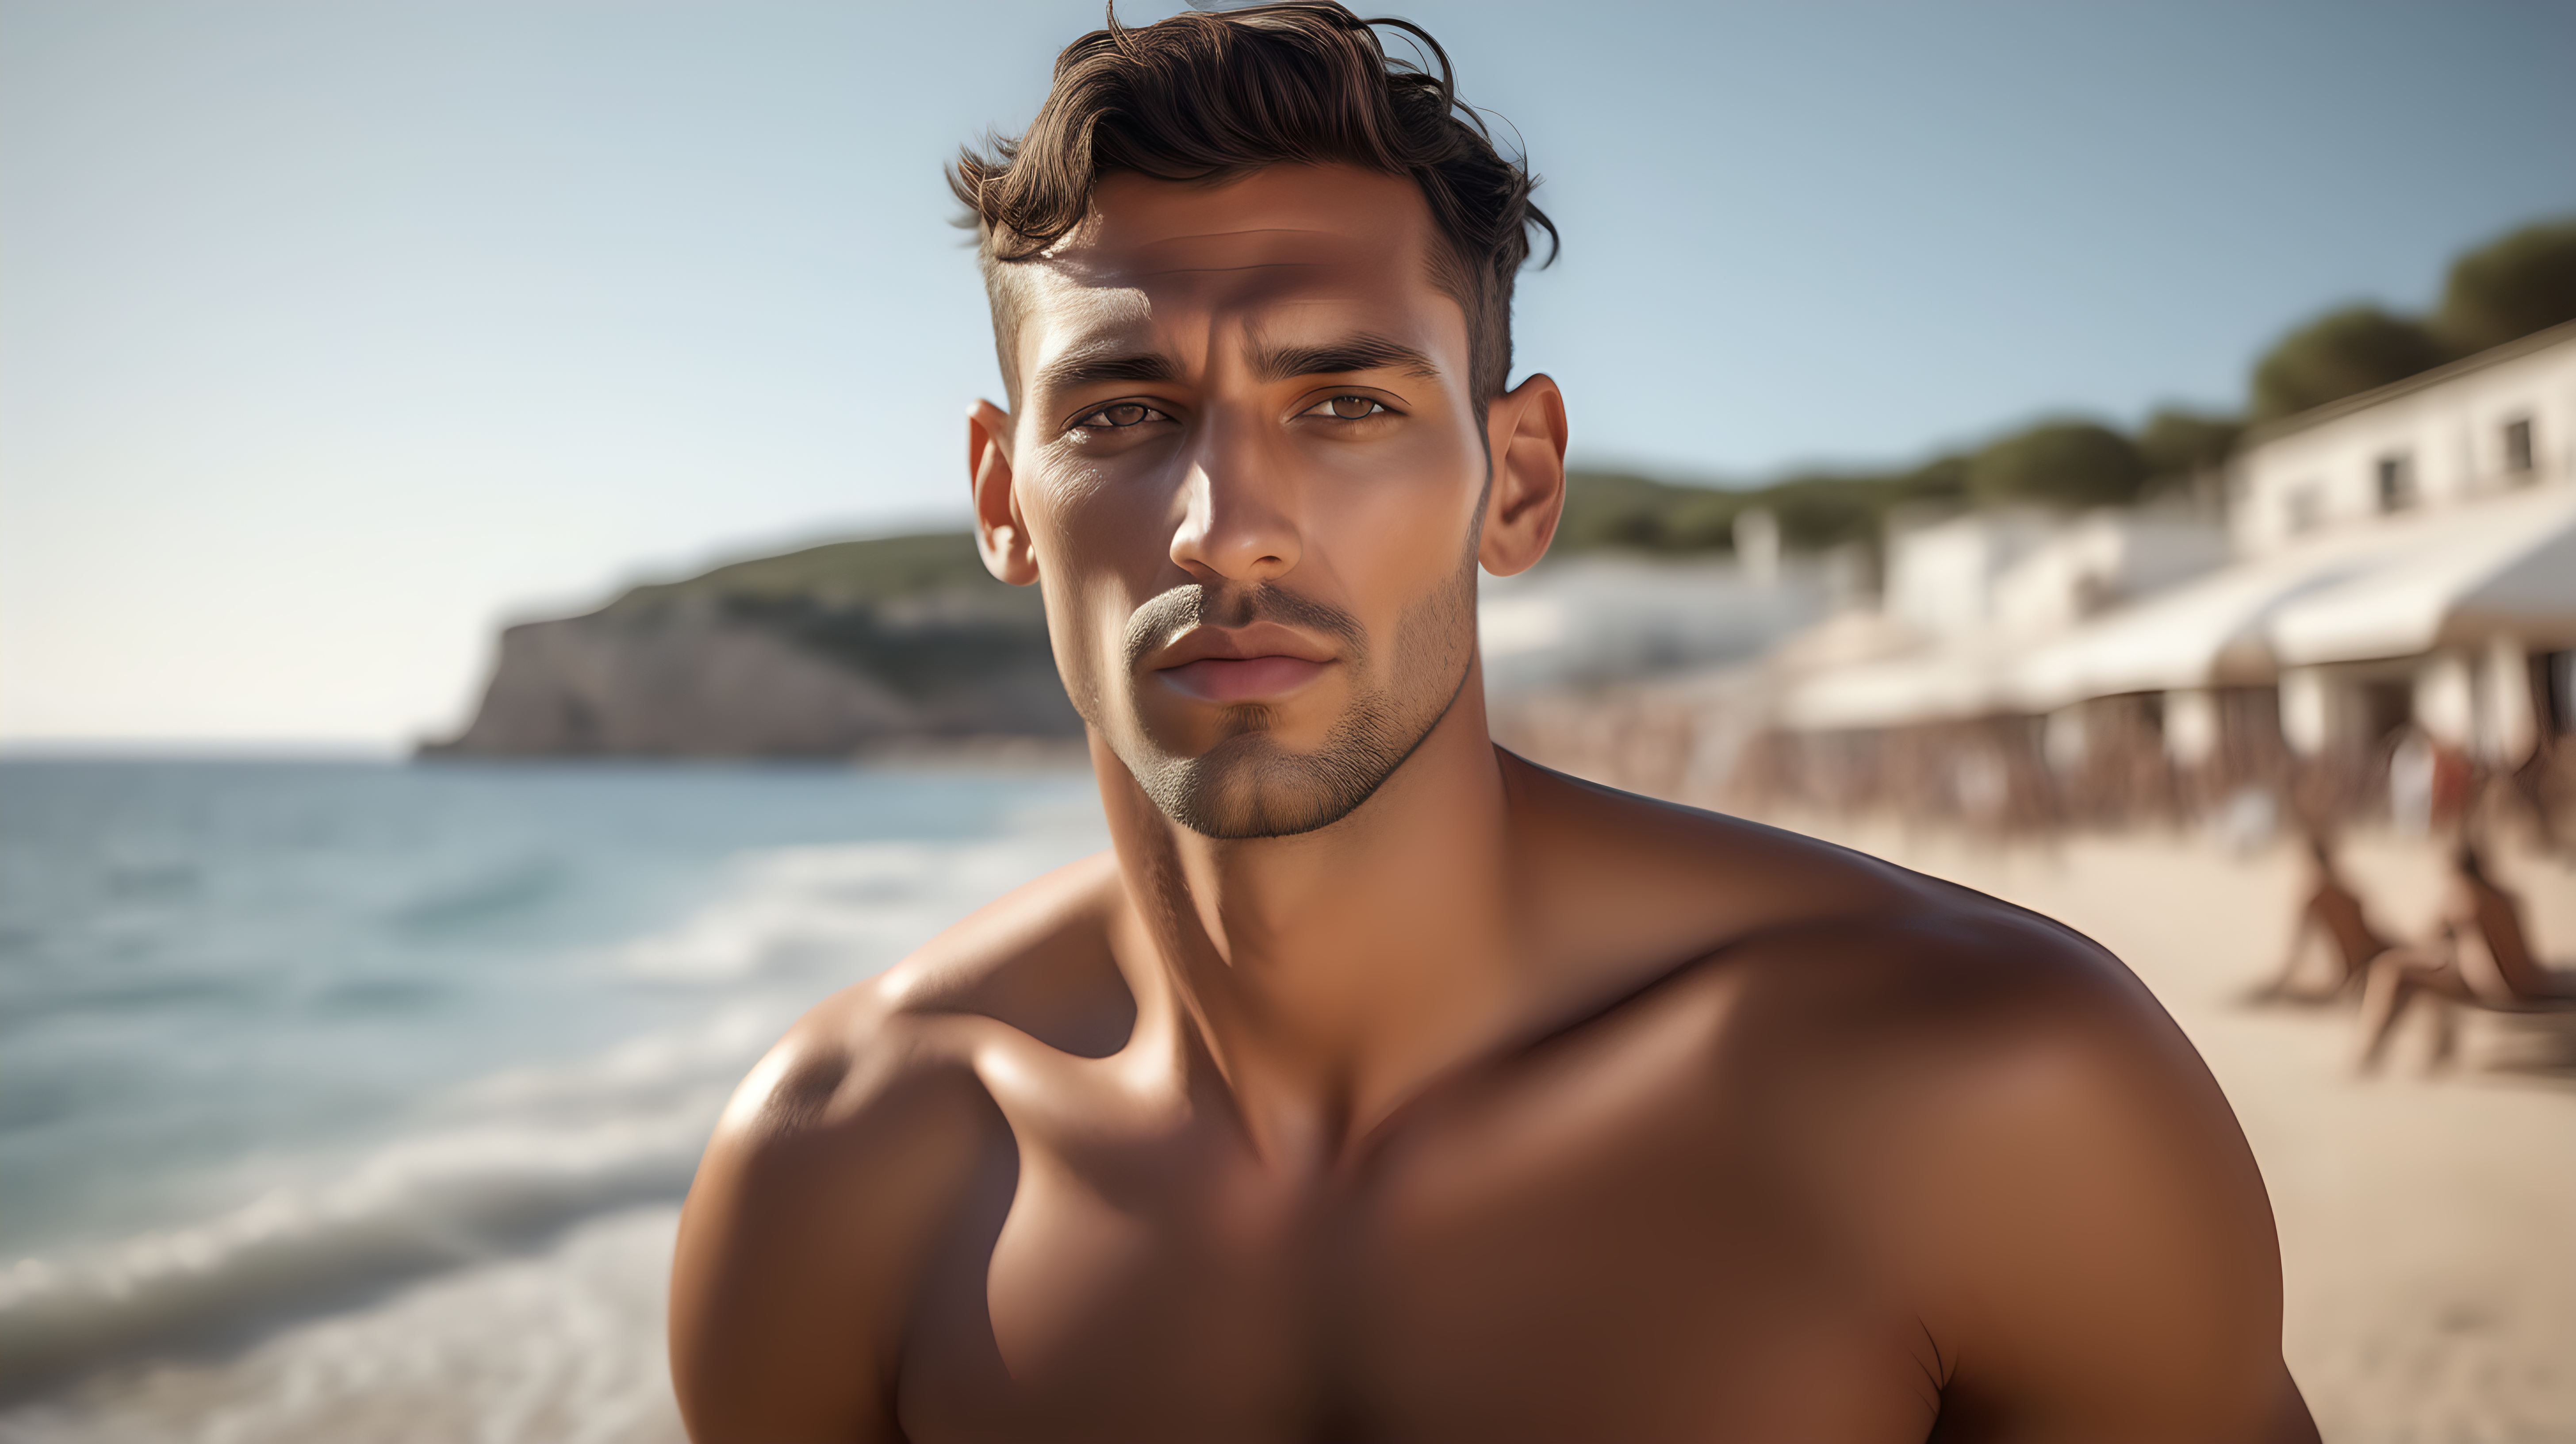 Chillout ibiza beach a super realistic handsome man